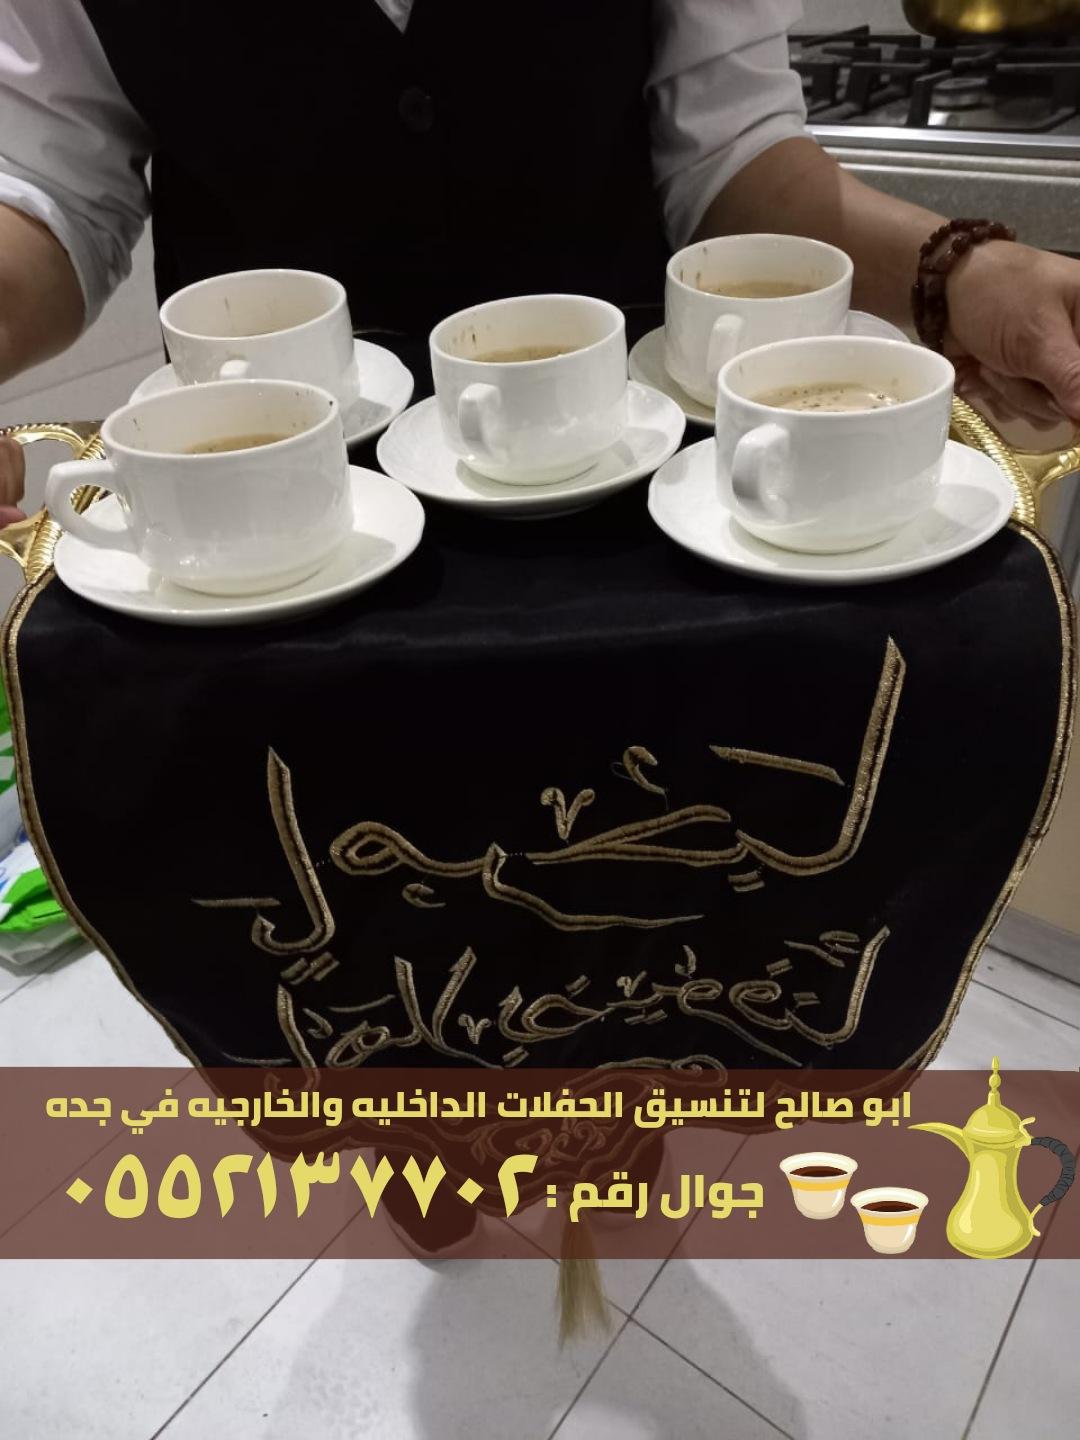 صبابين قهوة و قهوجي ضيافه في جدة,0552137702 523935237